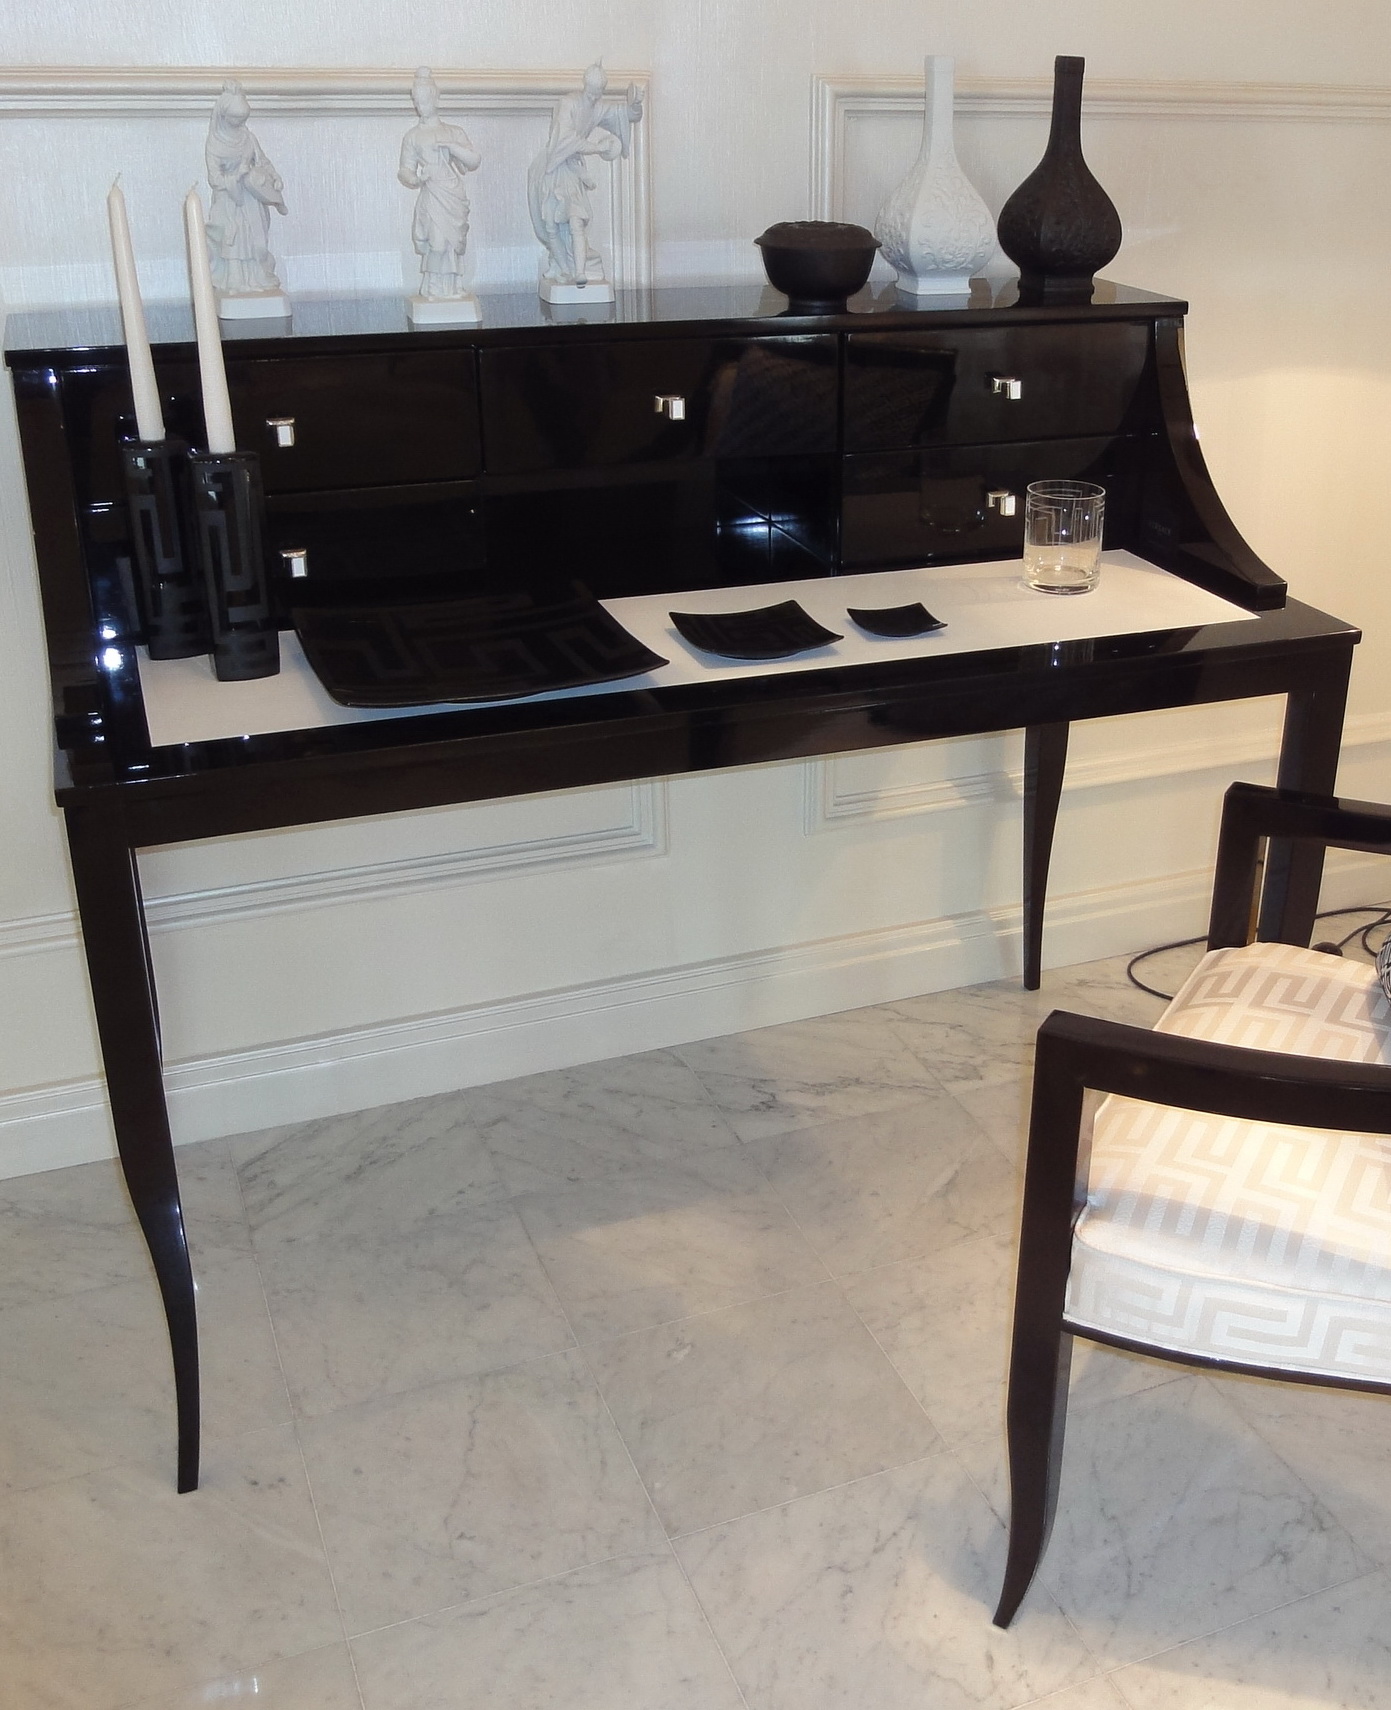 Стол письменный, выполненный в стиле арт-деко, дизайн Versace